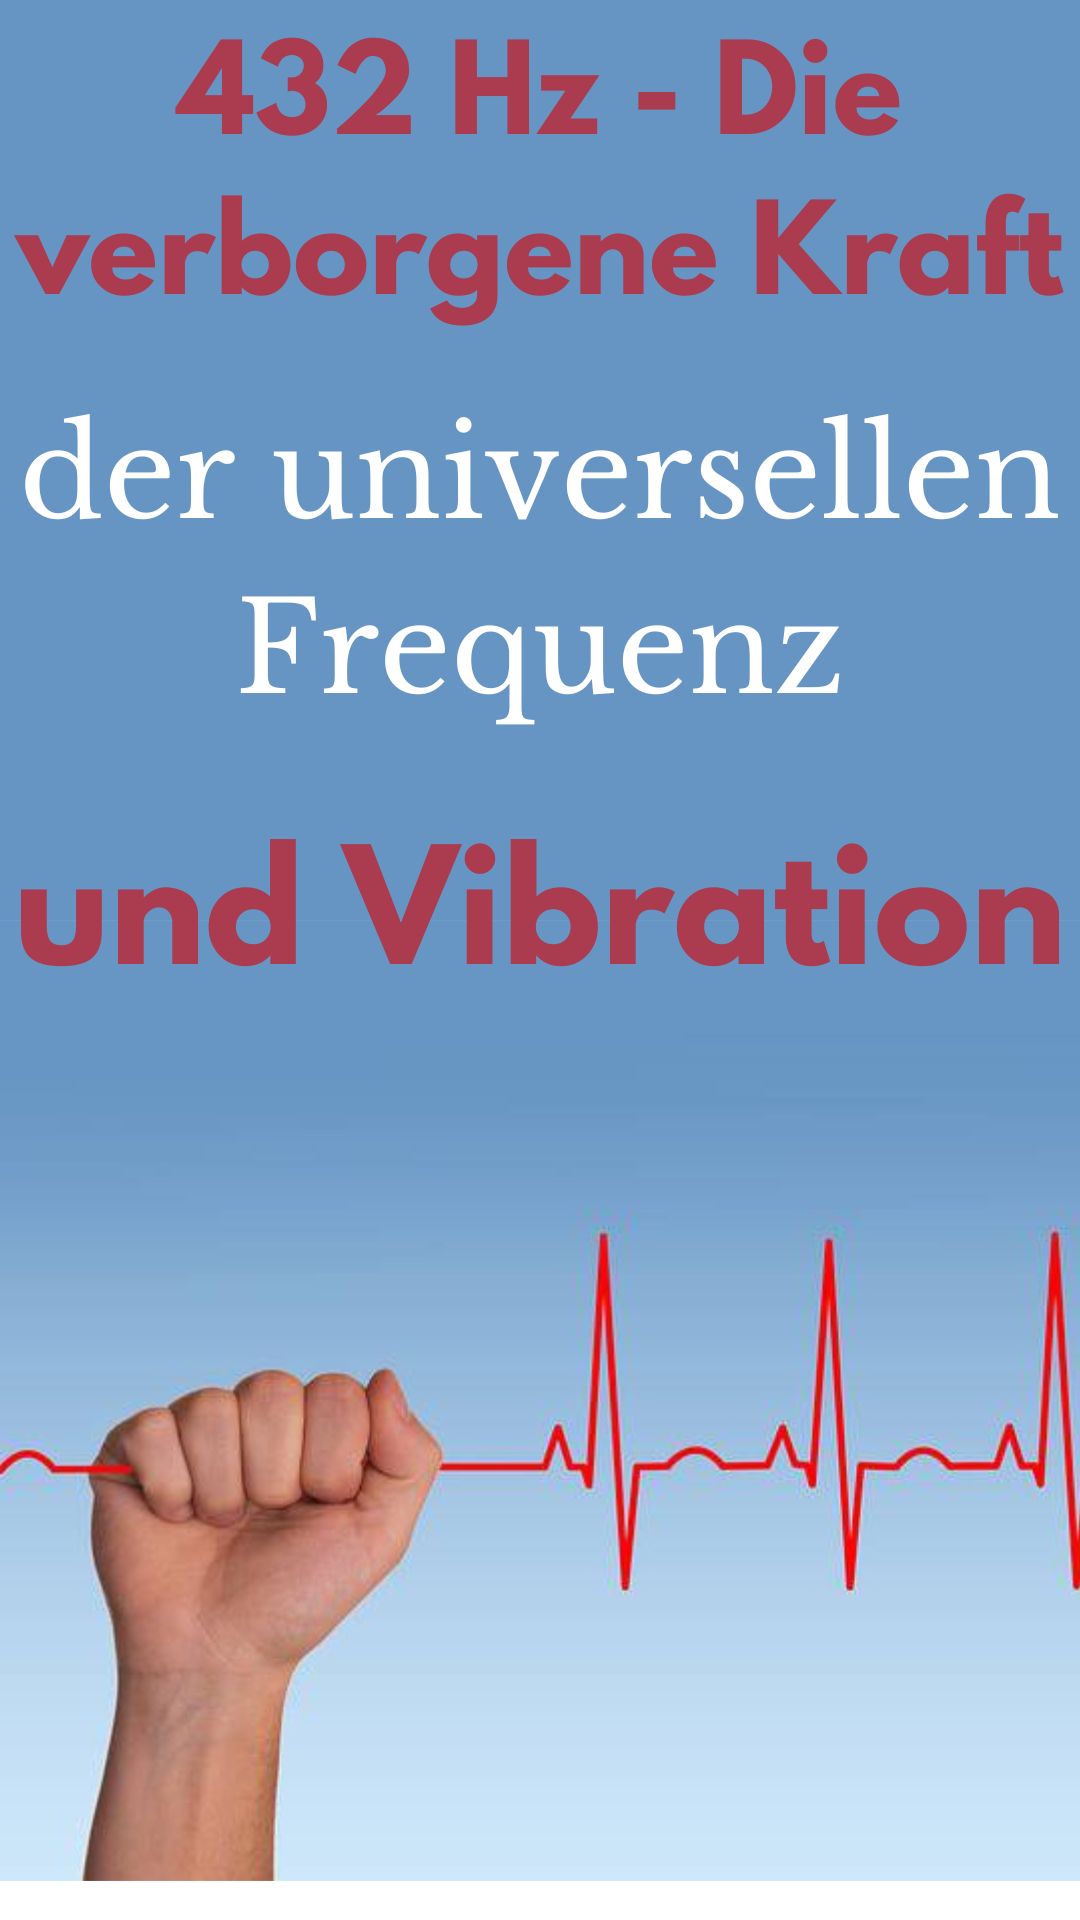 432-Hz-Die-verborgene-Kraft-der-universellen-Frequenz-und-Vibration